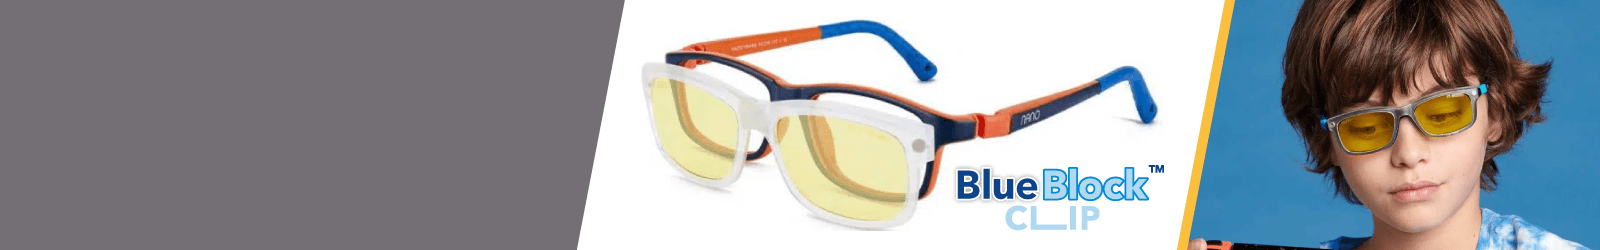 Nano Blue Block Clip Kids Glasses